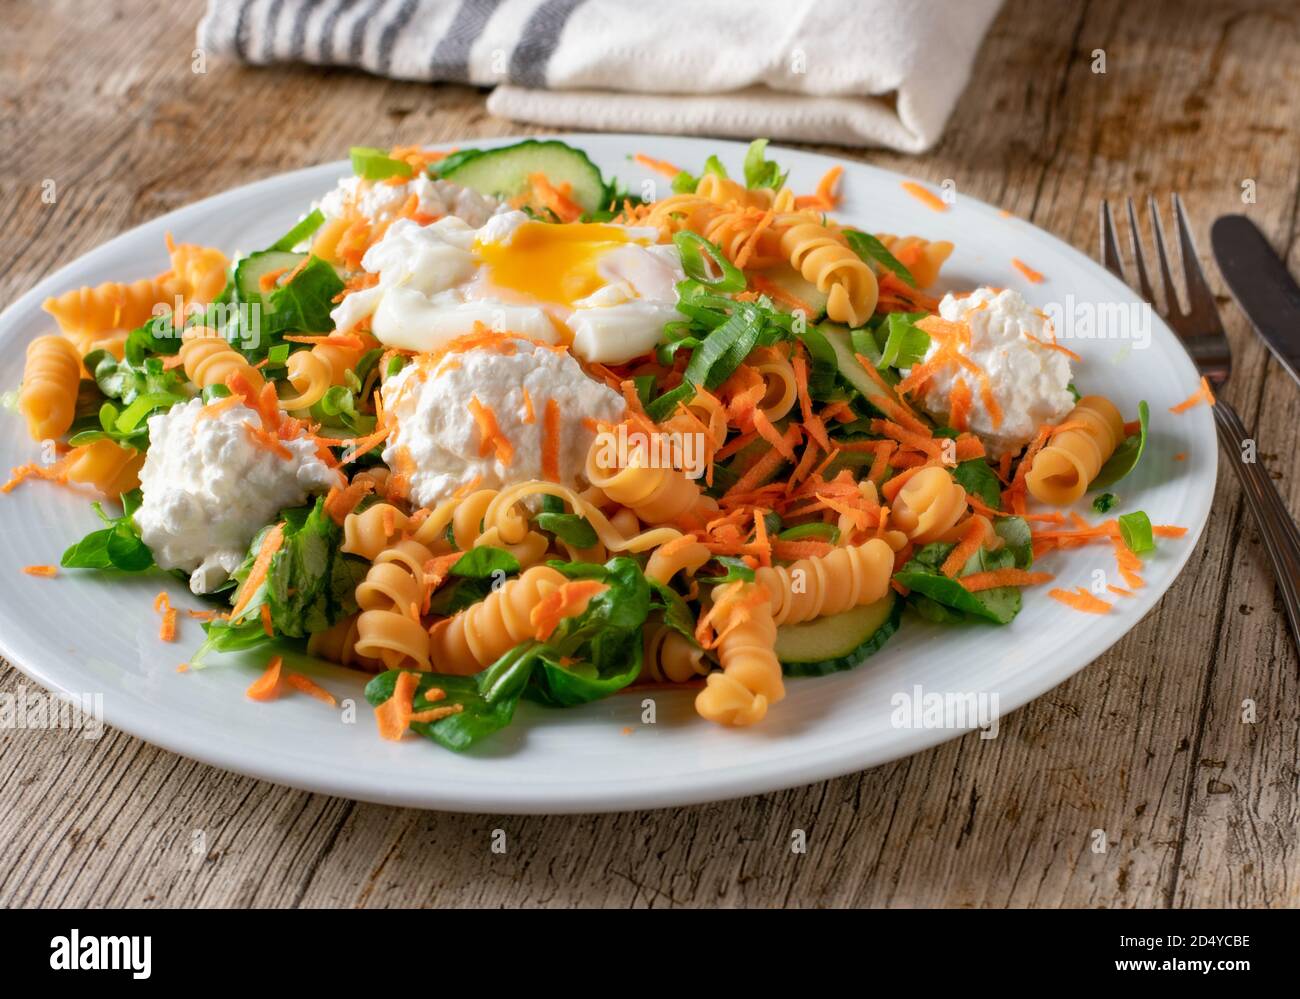 gluten free and vegetarian pasta dish Stock Photo